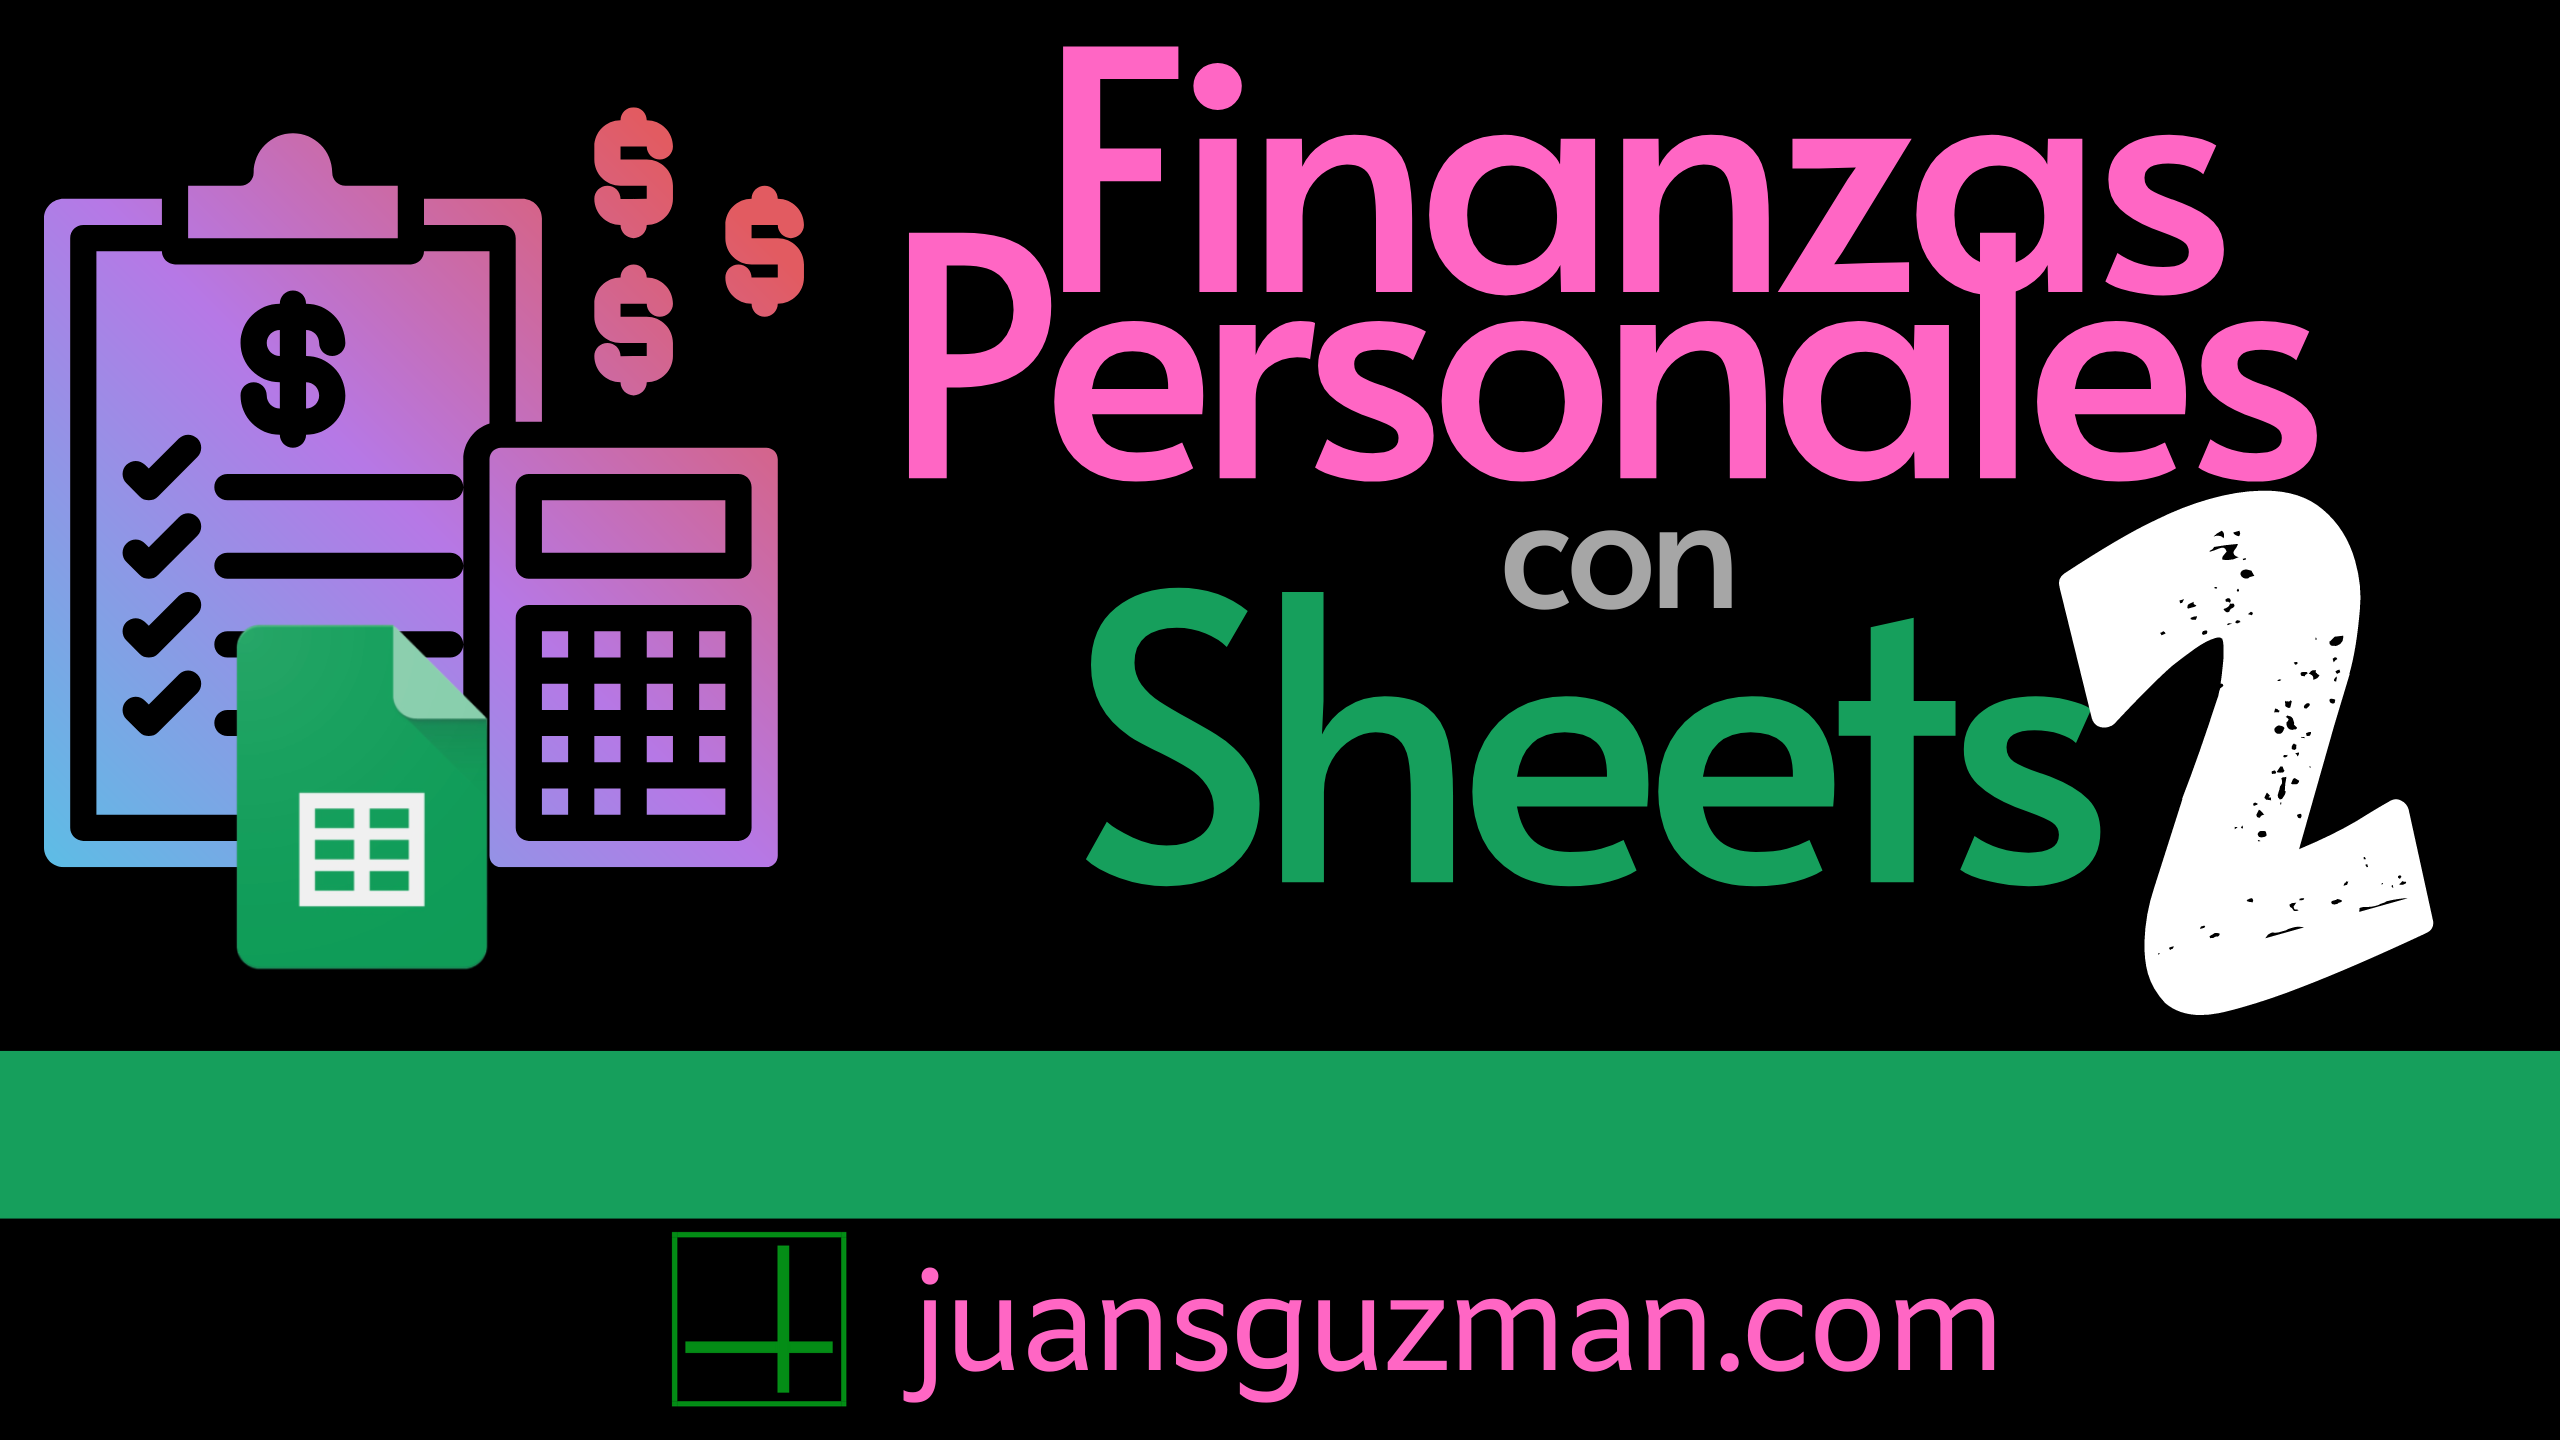 Finanzas Personales con Sheets - Parte 2 - Ingresos y Presupuestos